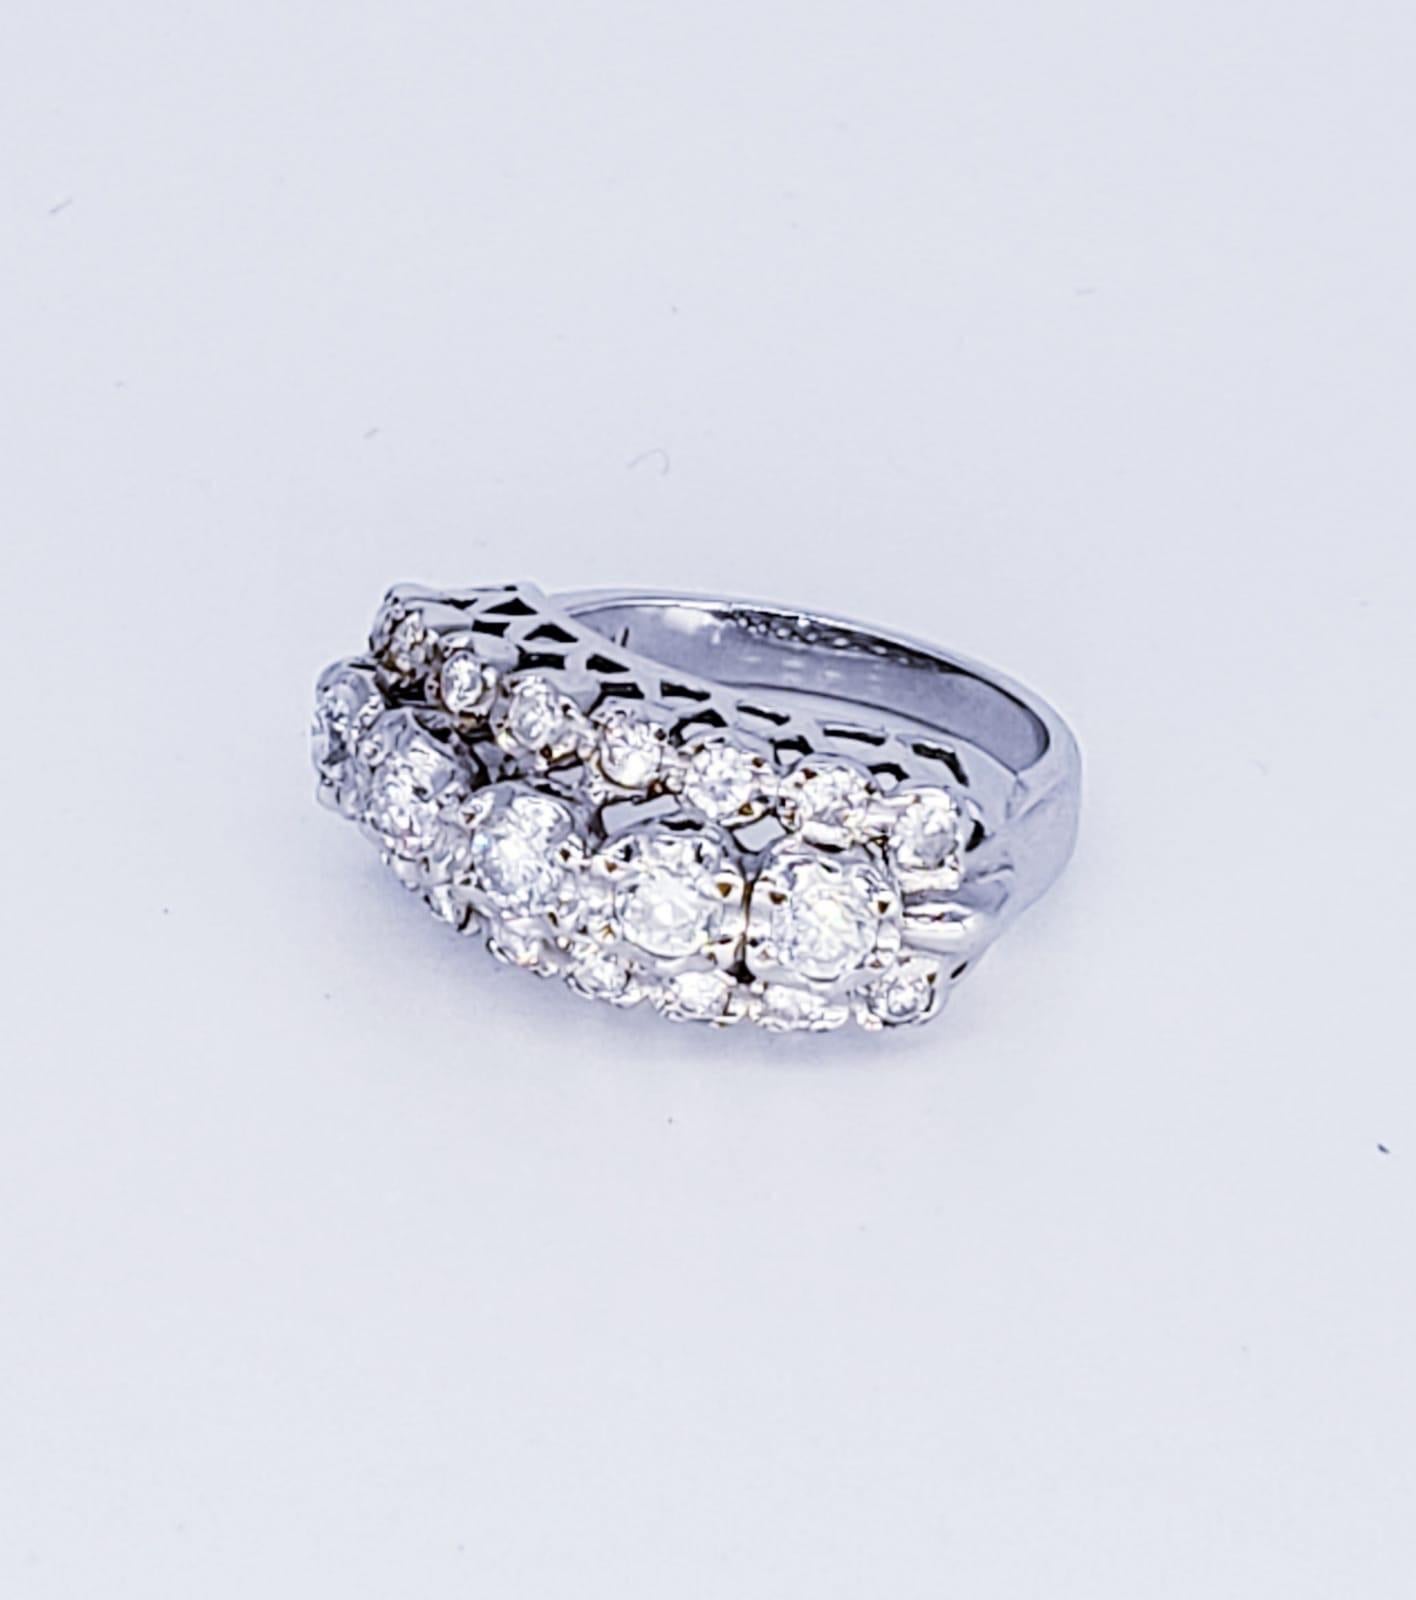 Vintage 2,21 Karat Diamant Braut 18k Weißgold Ring. Der Ring verfügt über Zentrum Diamanten ca. Gewicht von 1,25 Karat (5x0,25ct) & 0,96 Seite Diamanten ca. (0,06x16). Der Ring ist ein schönes Standout modischen Diamantring mit hellen Diamanten